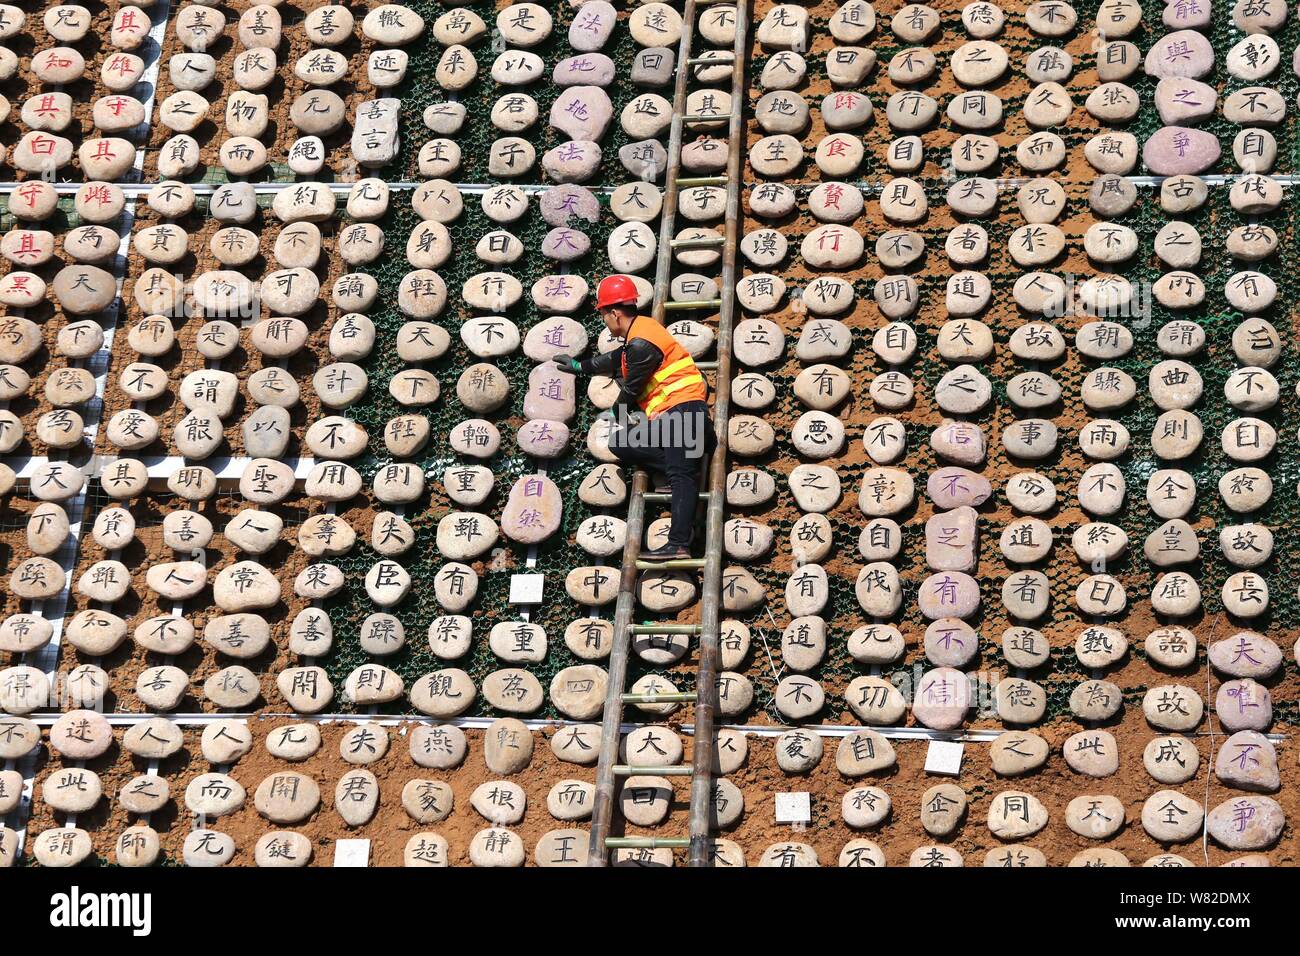 Un lavoratore visualizza rocce scolpite con il testo del classico cinese Tao Te Ching', anche semplicemente indicata come Laozi, sulla montagna Wangwu in Jiyuan Foto Stock